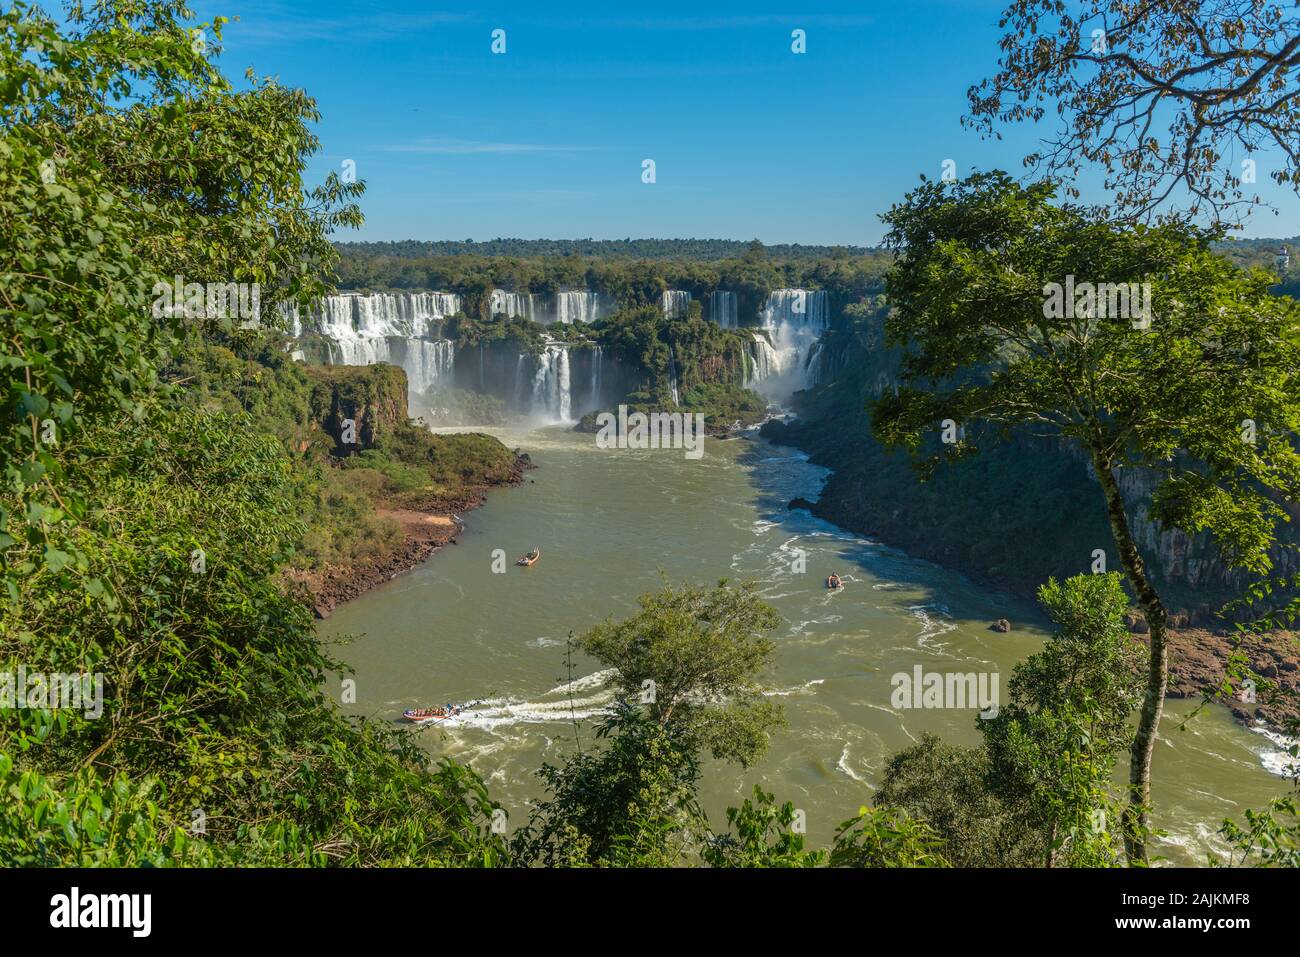 Cataratas de Iguazú, lado brasileño, el Parque Nacional do Iguaçu, Río Grande do Sul, Brasil, América Latina Foto de stock